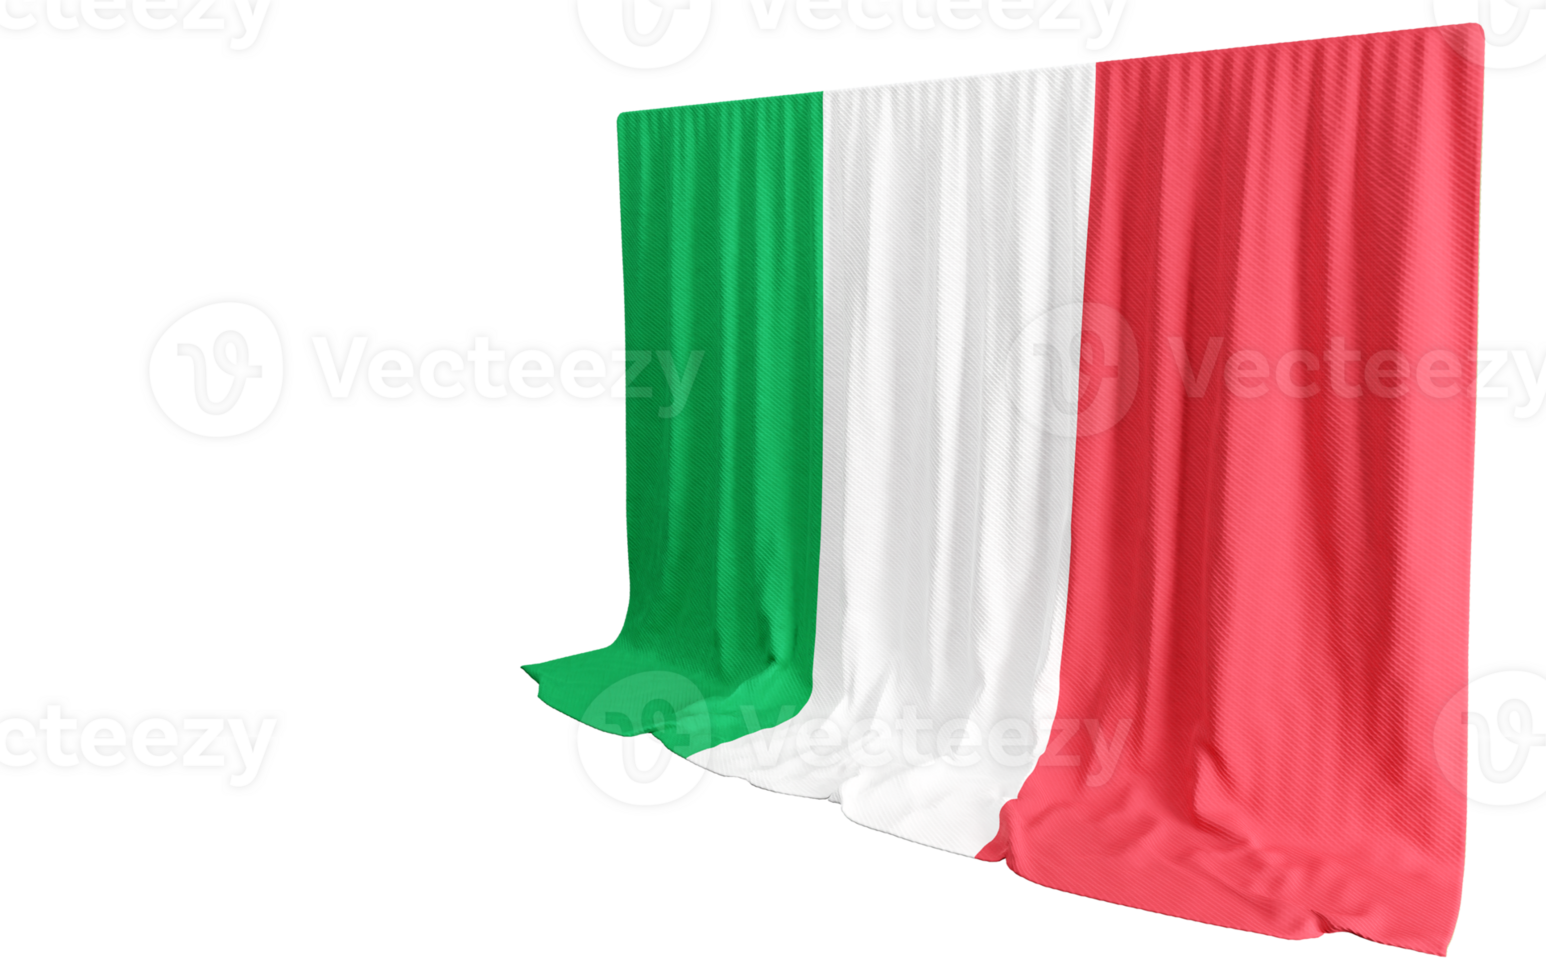 italiano bandera cortina en 3d representación de italia eterno elegancia png